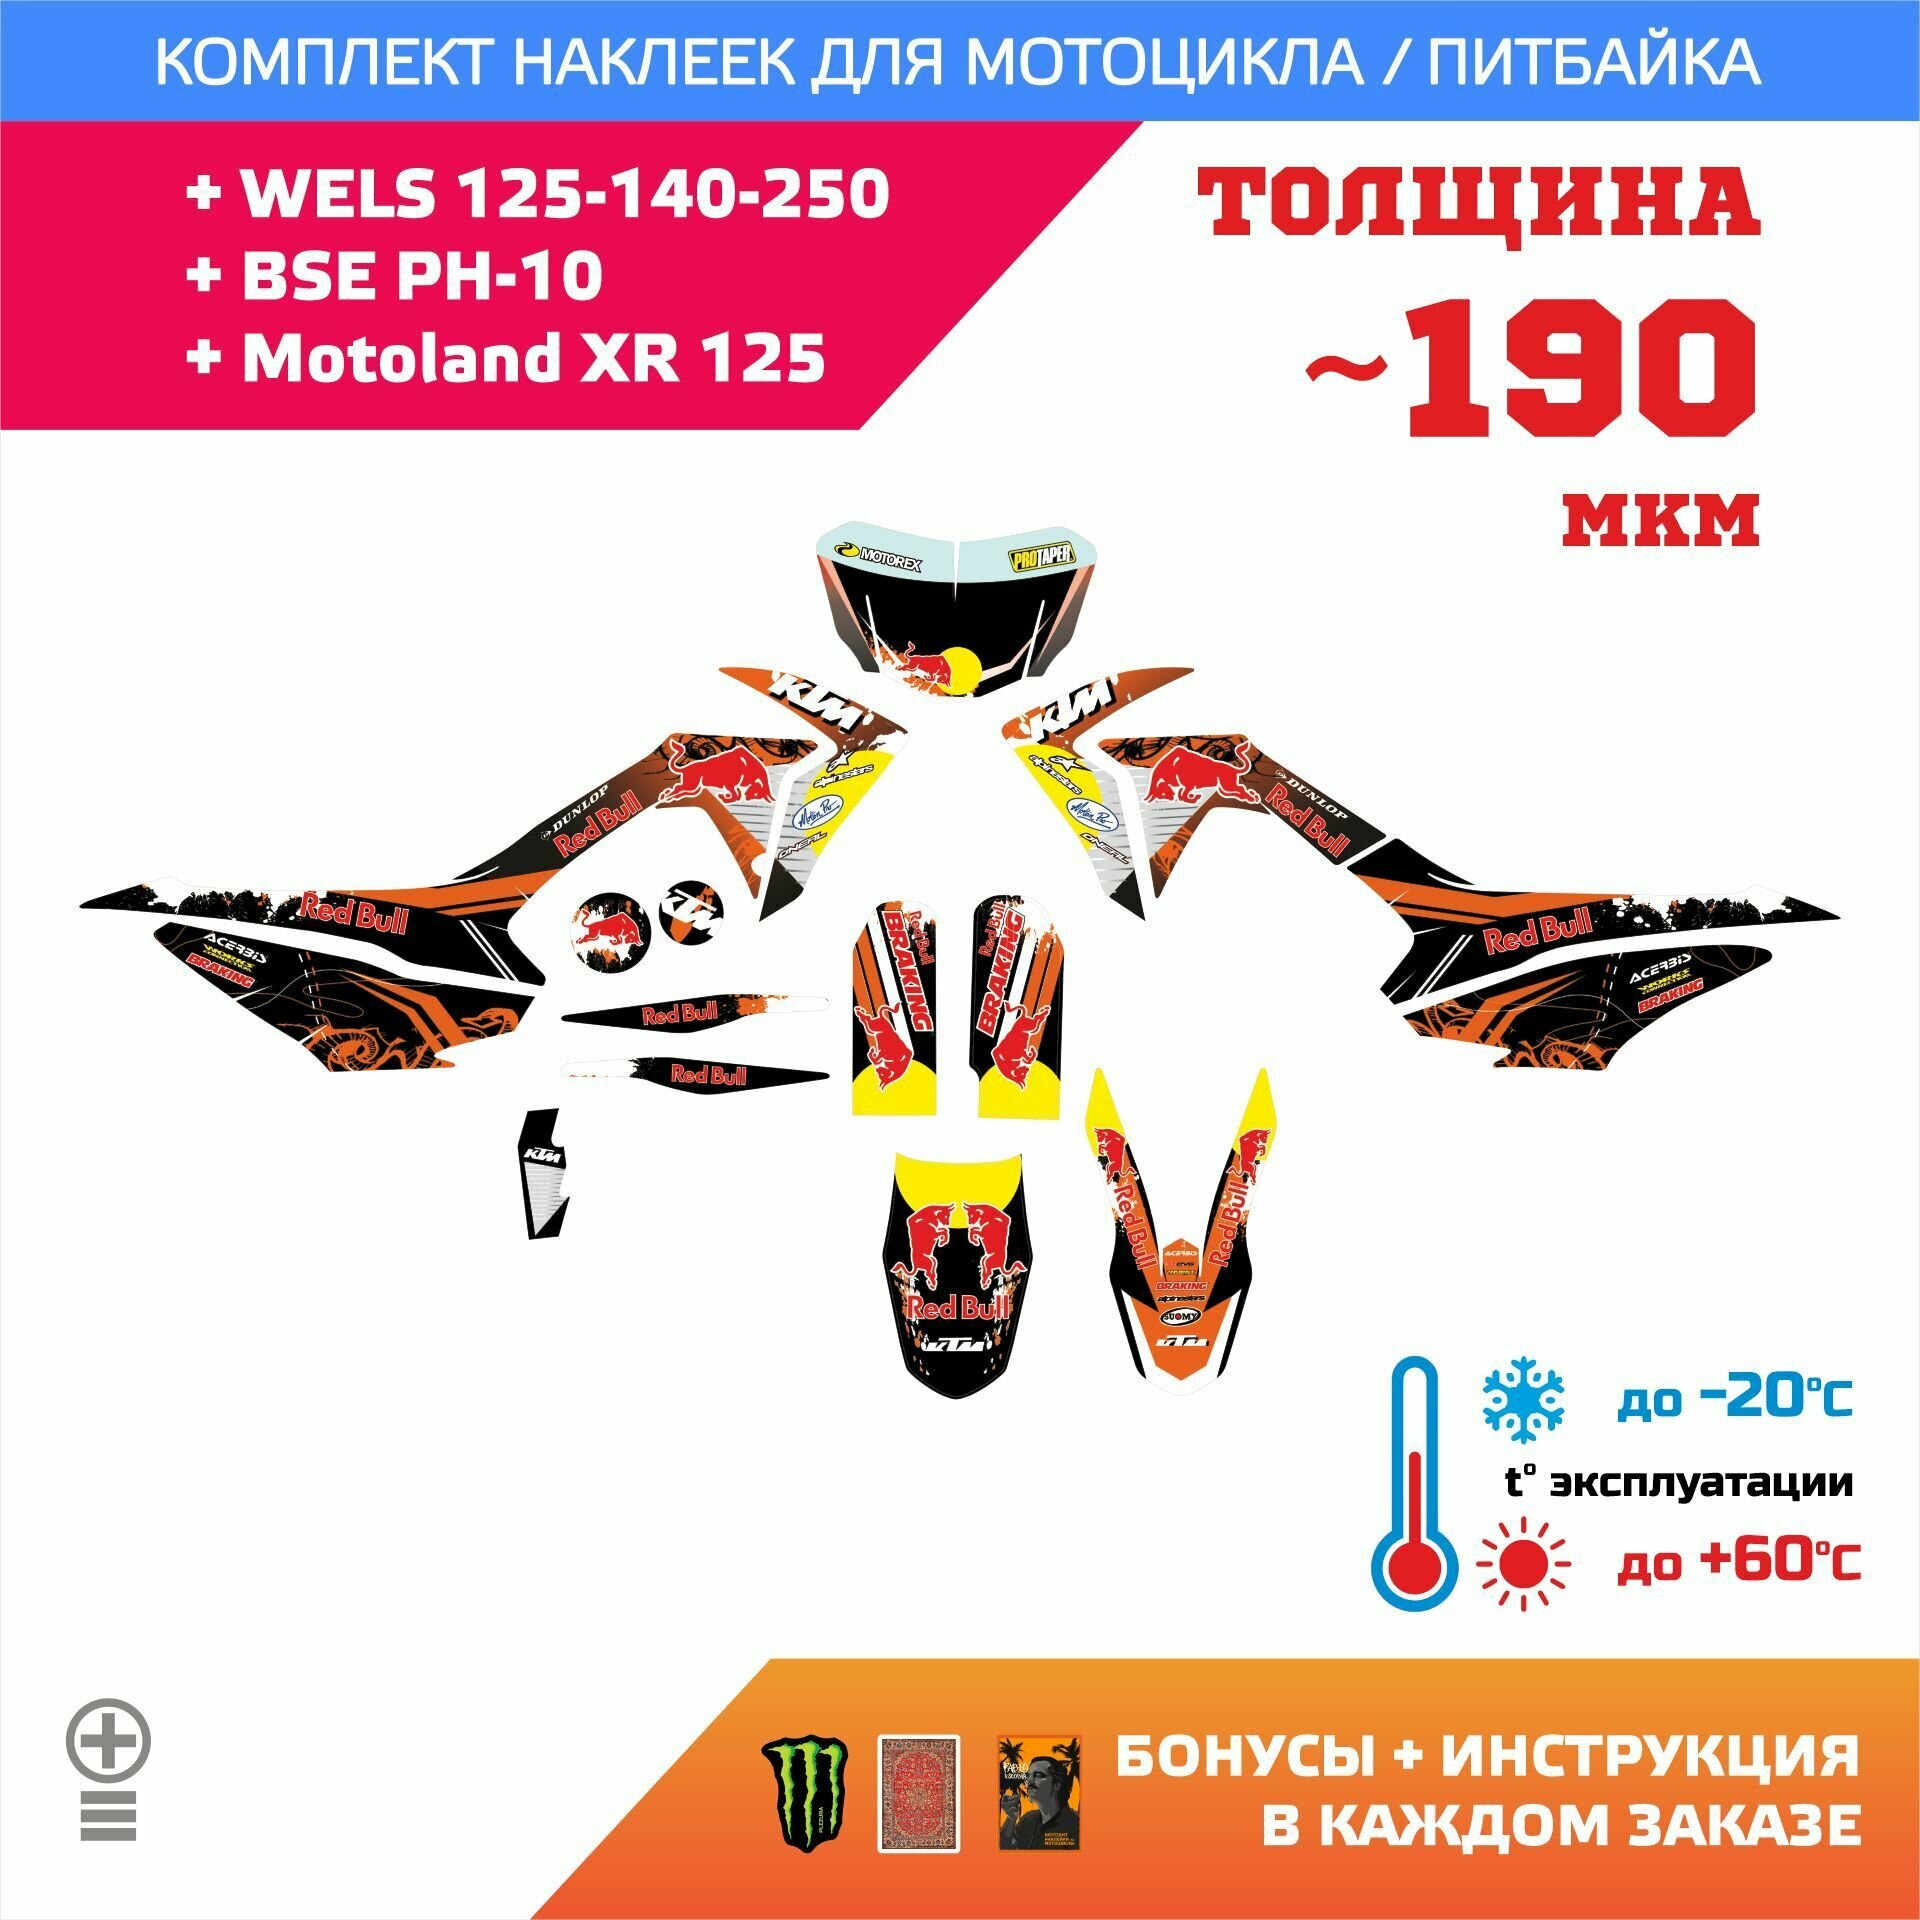 Наклейки 330мкм для WELS 125-140-250 BSE PH-10 Motoland XR 125 прочность: медиум (турист)